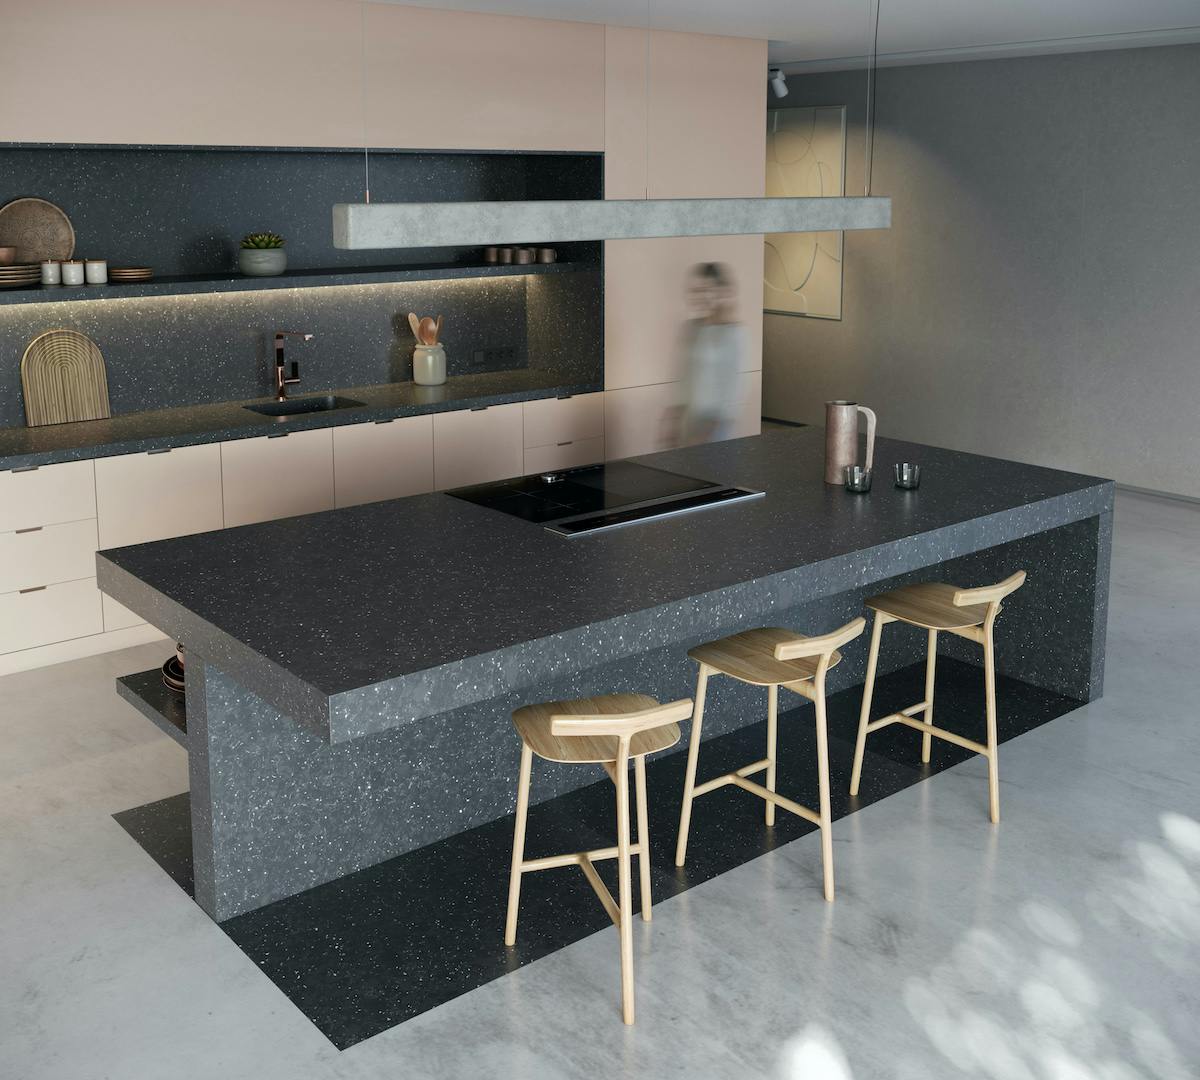 Numero immagine 36 della sezione corrente di Dekton Sogne vince il premio Architectural Digest Great Kitchen Design Award 2019 di Cosentino Italia